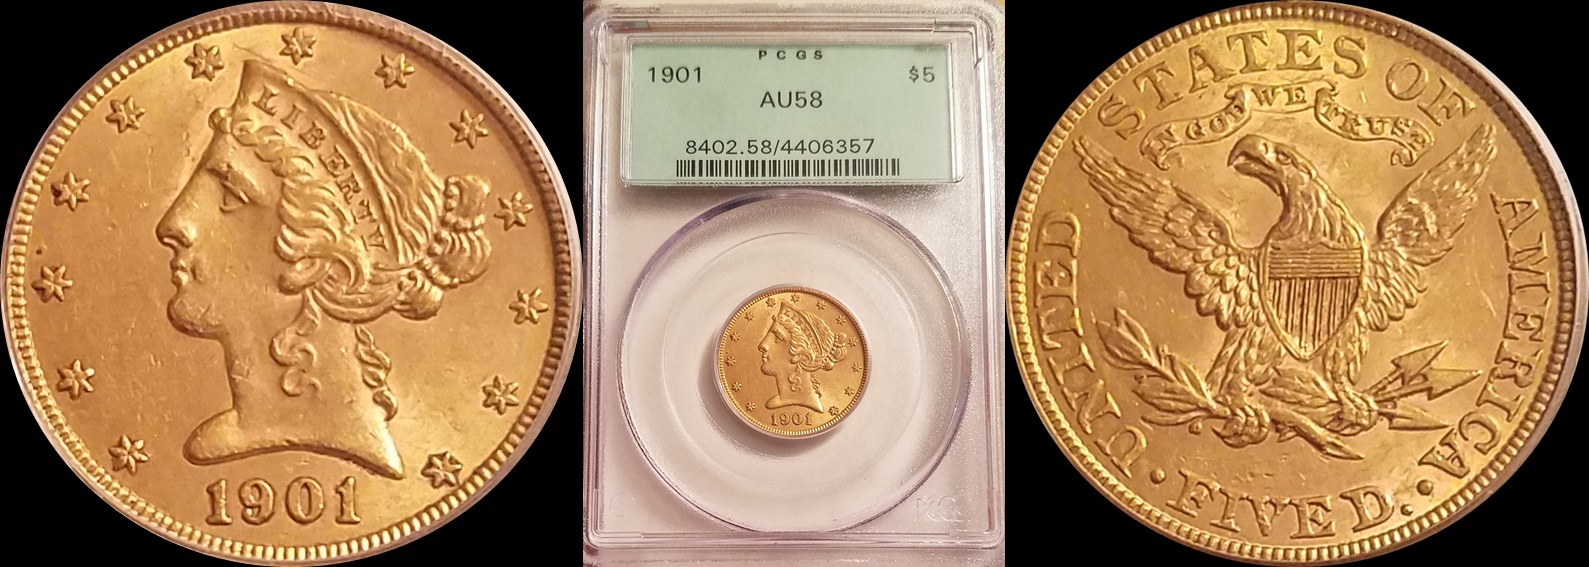 1901 $5 Gold 2-horz.jpg